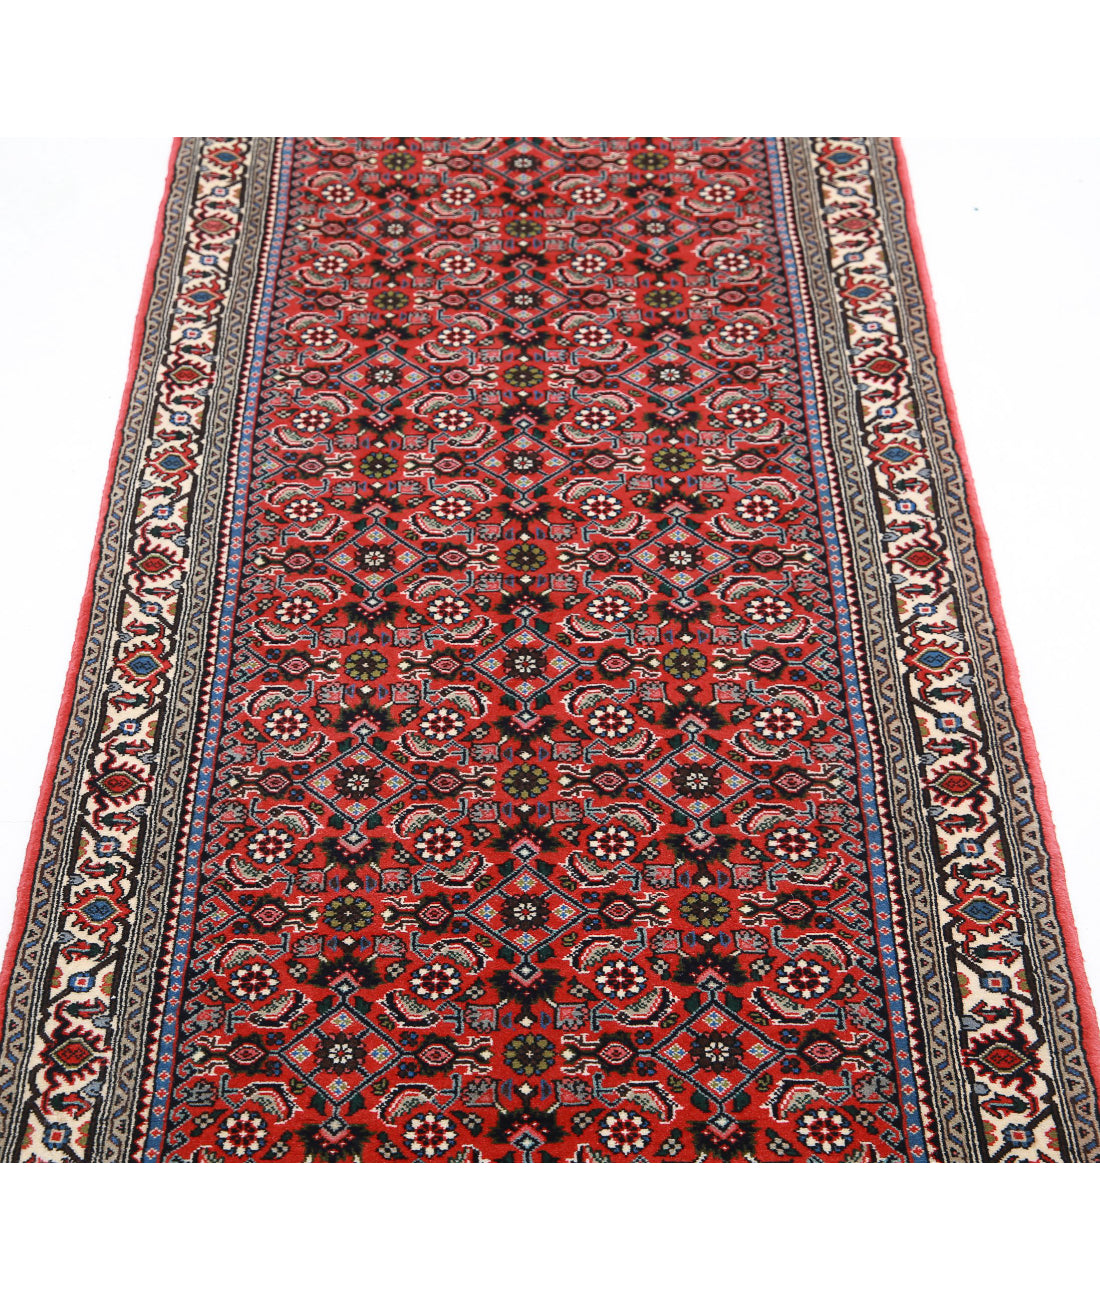 Hand Knotted Persian Bijar Wool Rug - 2'6'' x 9'5'' 2'6'' x 9'5'' (75 X 283) / Rust / Ivory